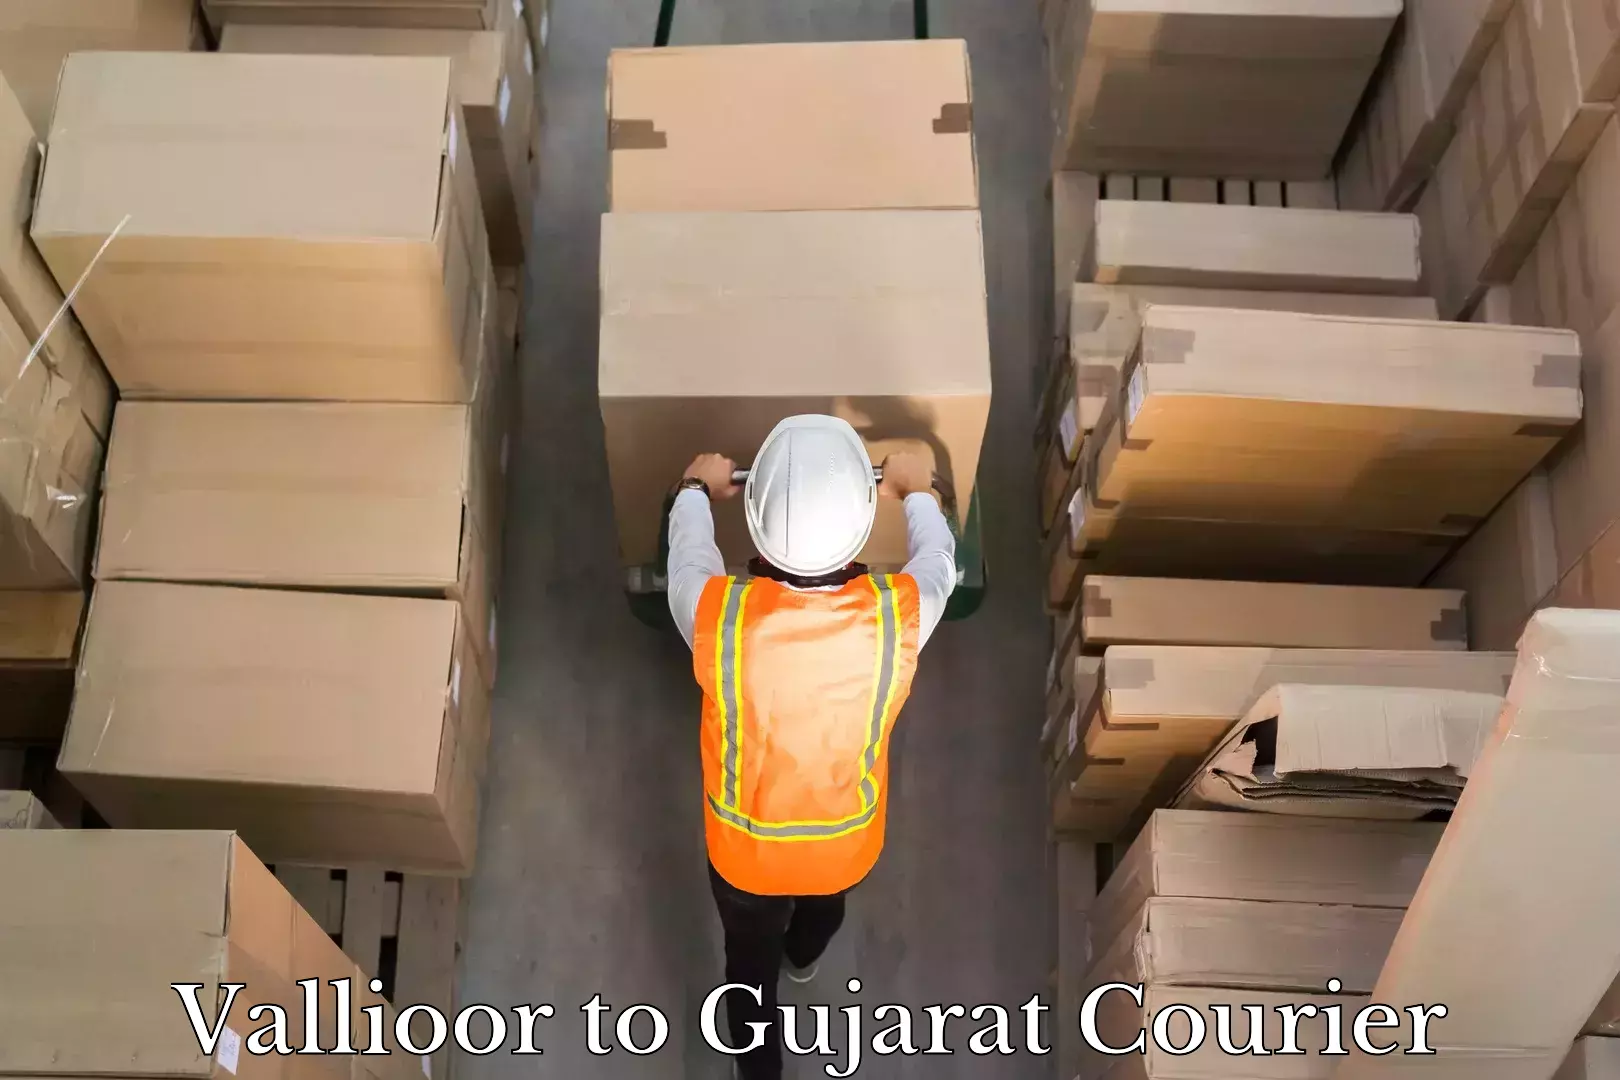 Efficient logistics management Vallioor to Gujarat